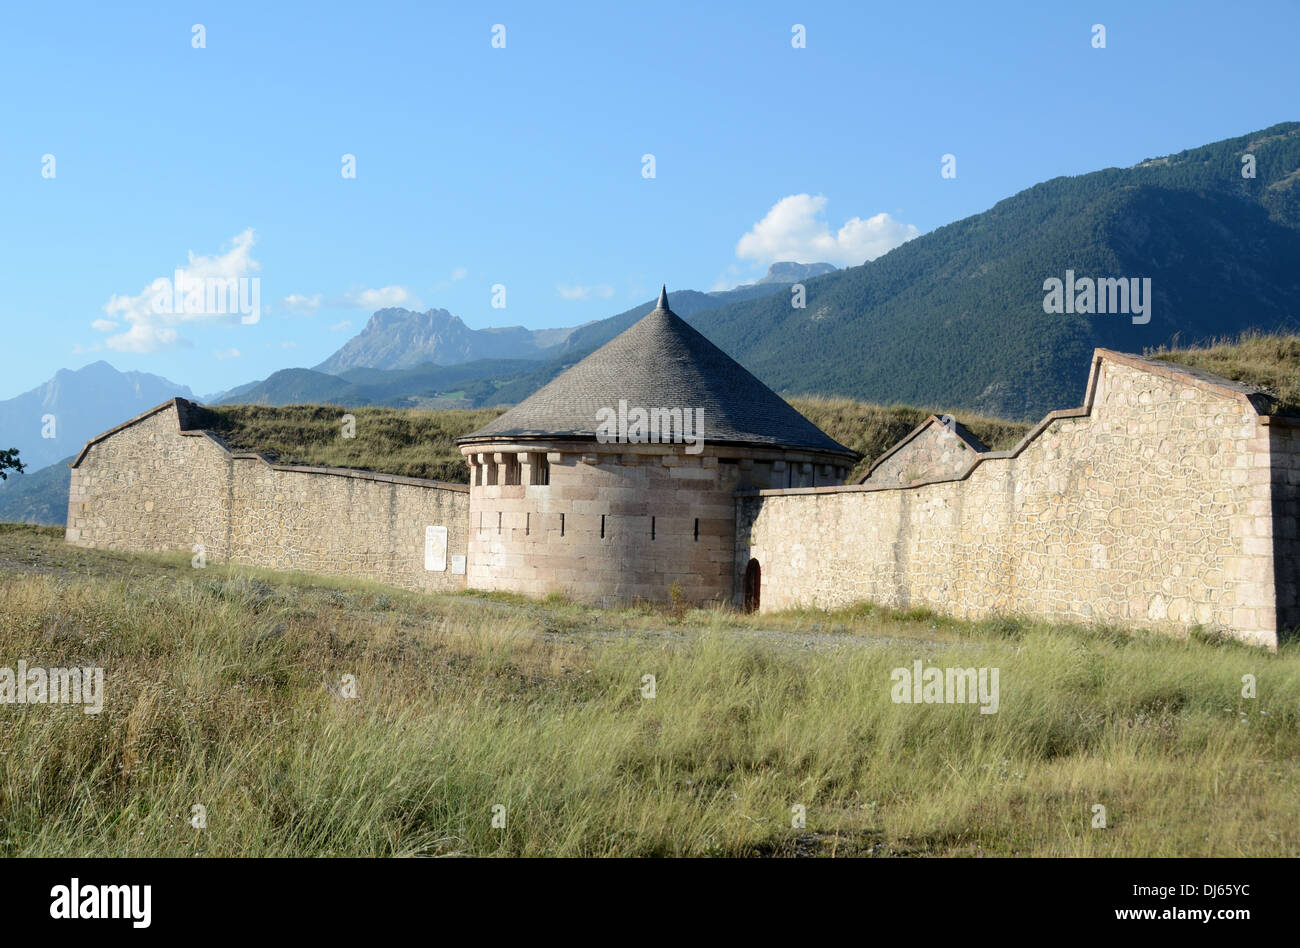 Fortifications de Vauban et tour de ville militaire fortifiée de Mont-Dauphin Hautes-Alpes France Banque D'Images